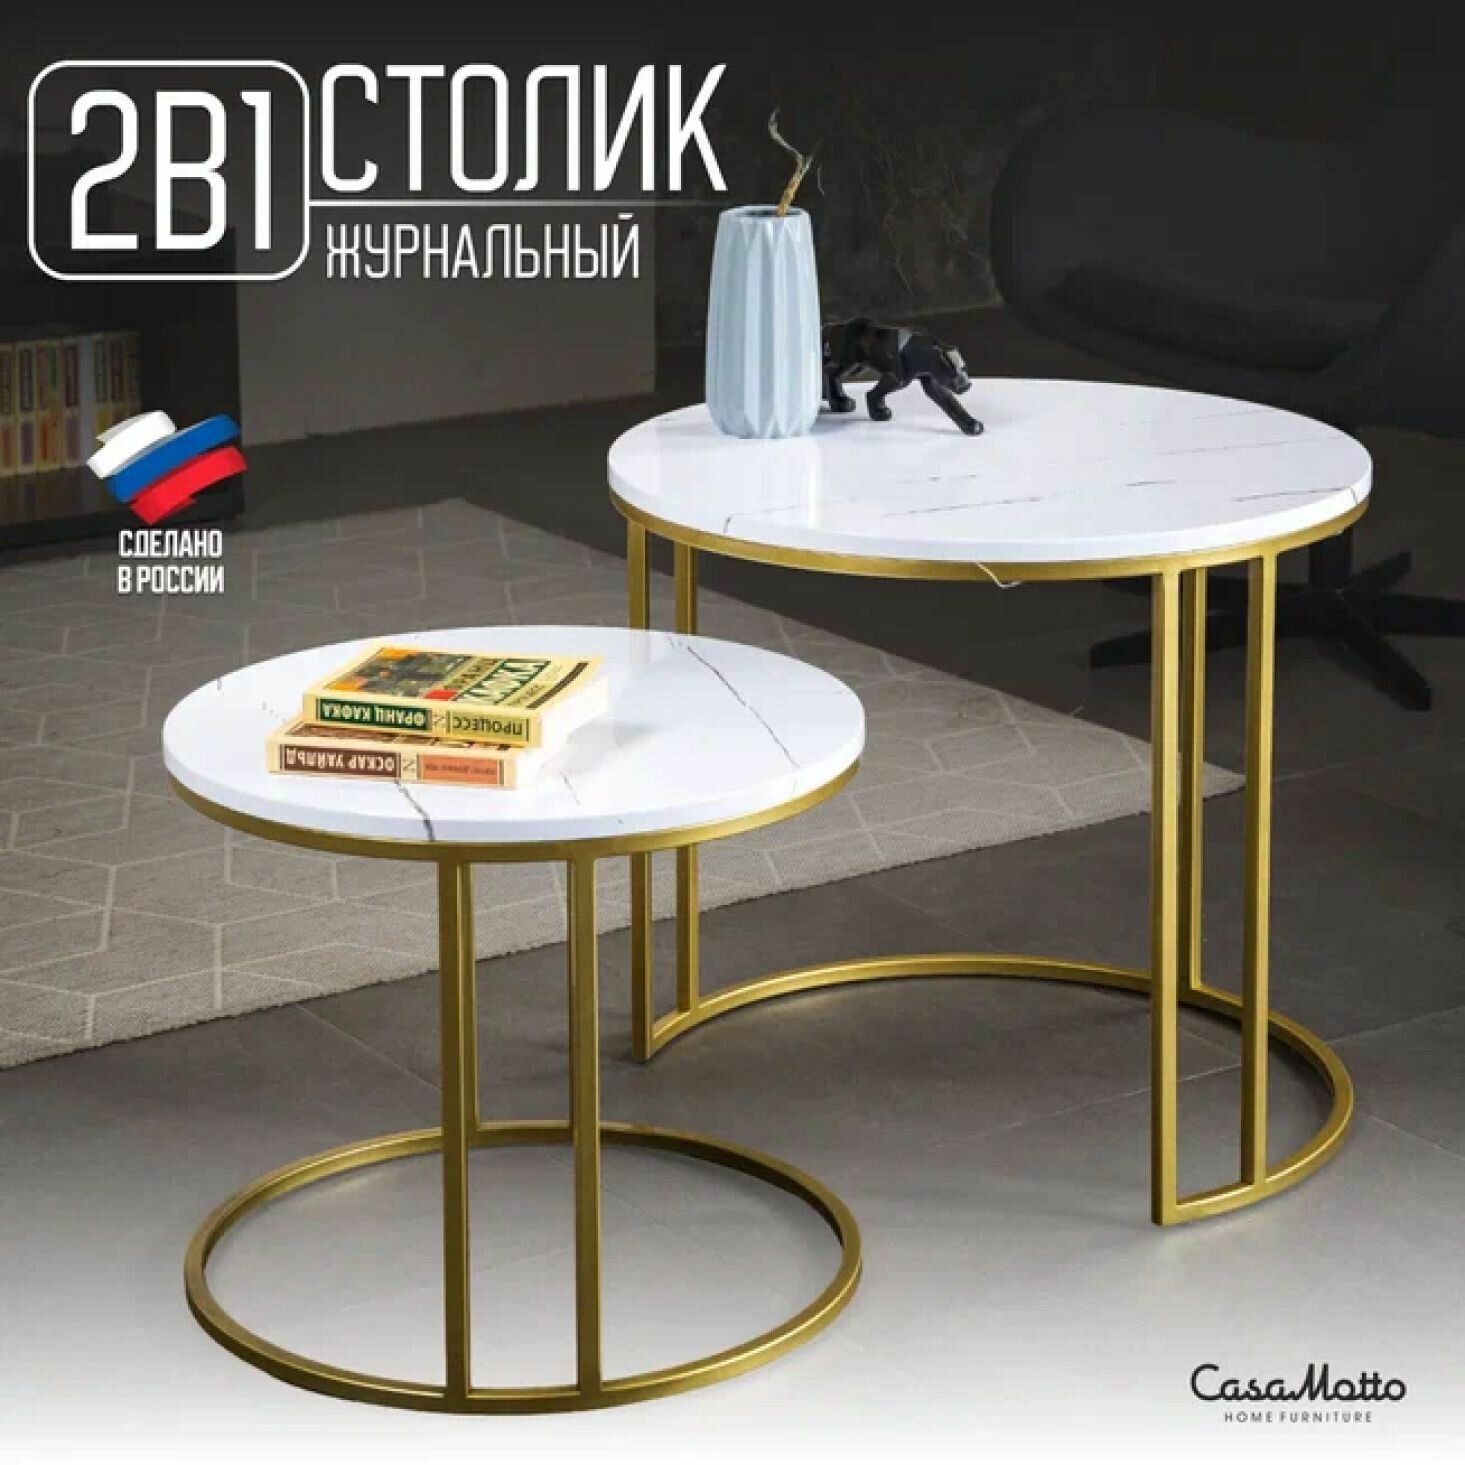 Журнальный круглый стол CasaMotto прикроватный, комплект - 2 шт, из МДФ, 60x60x54 см, кофейный столик / в гостиную, спальню, офис